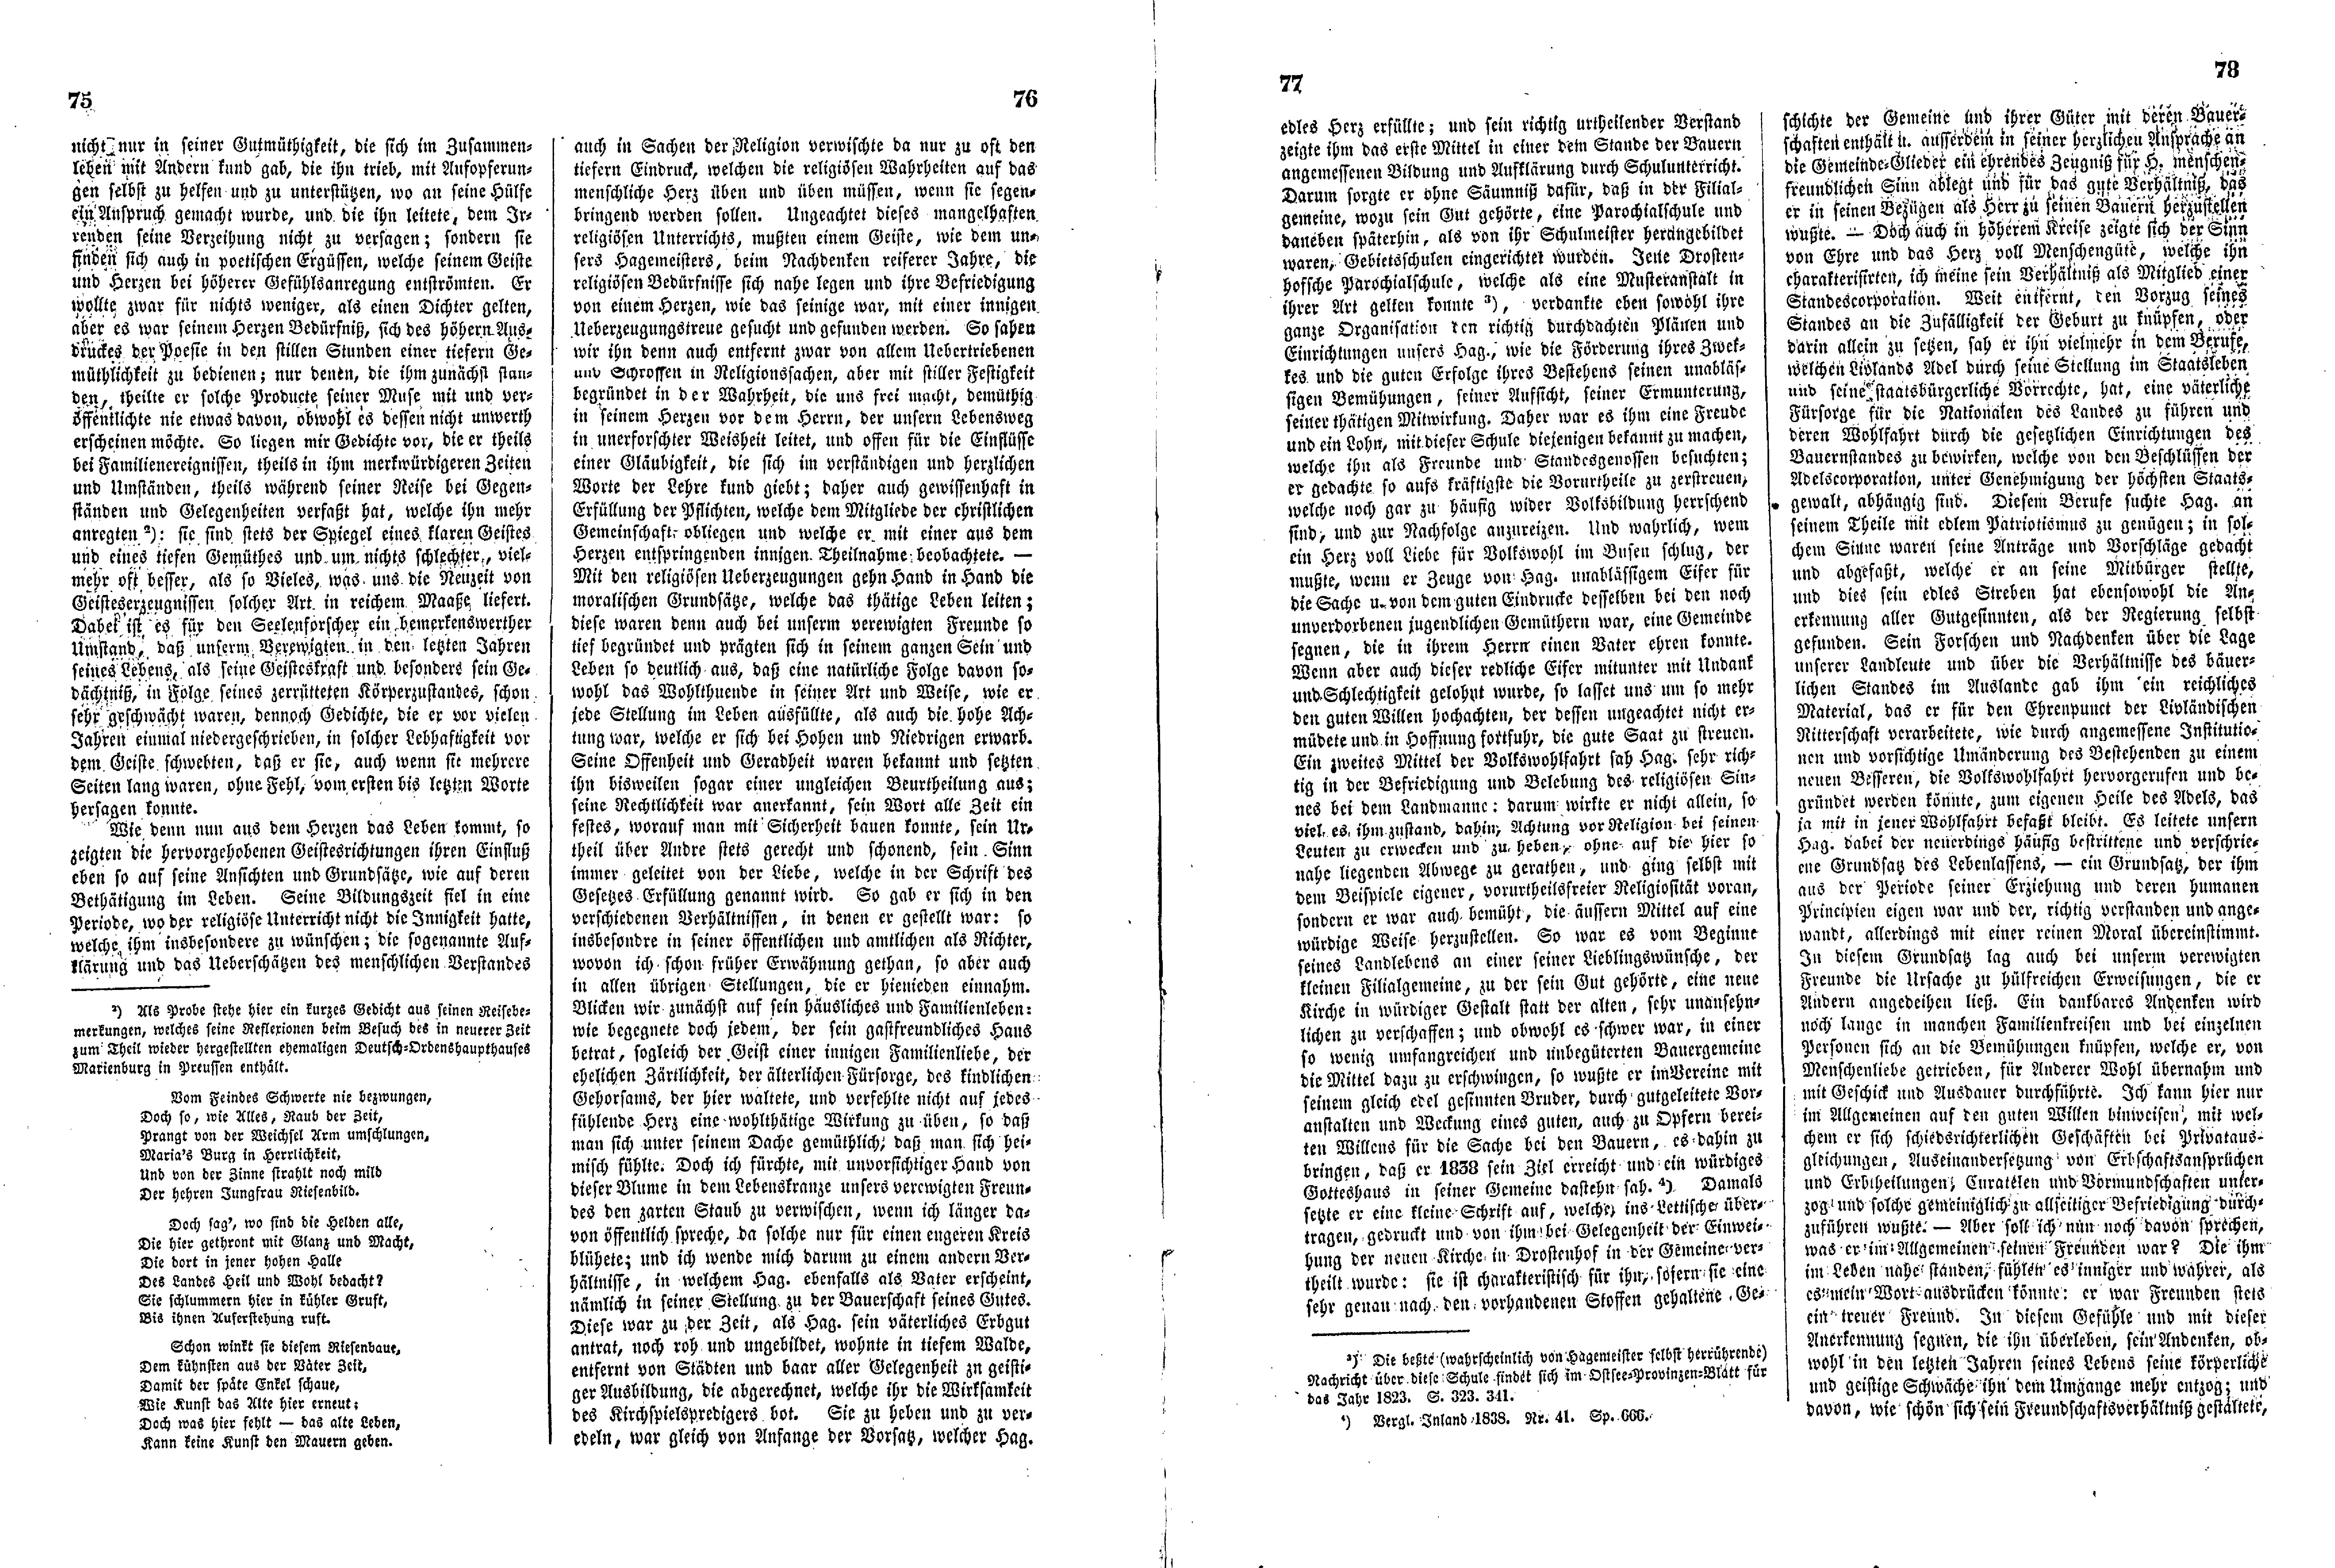 Das Inland [11] (1846) | 24. (75-78) Основной текст